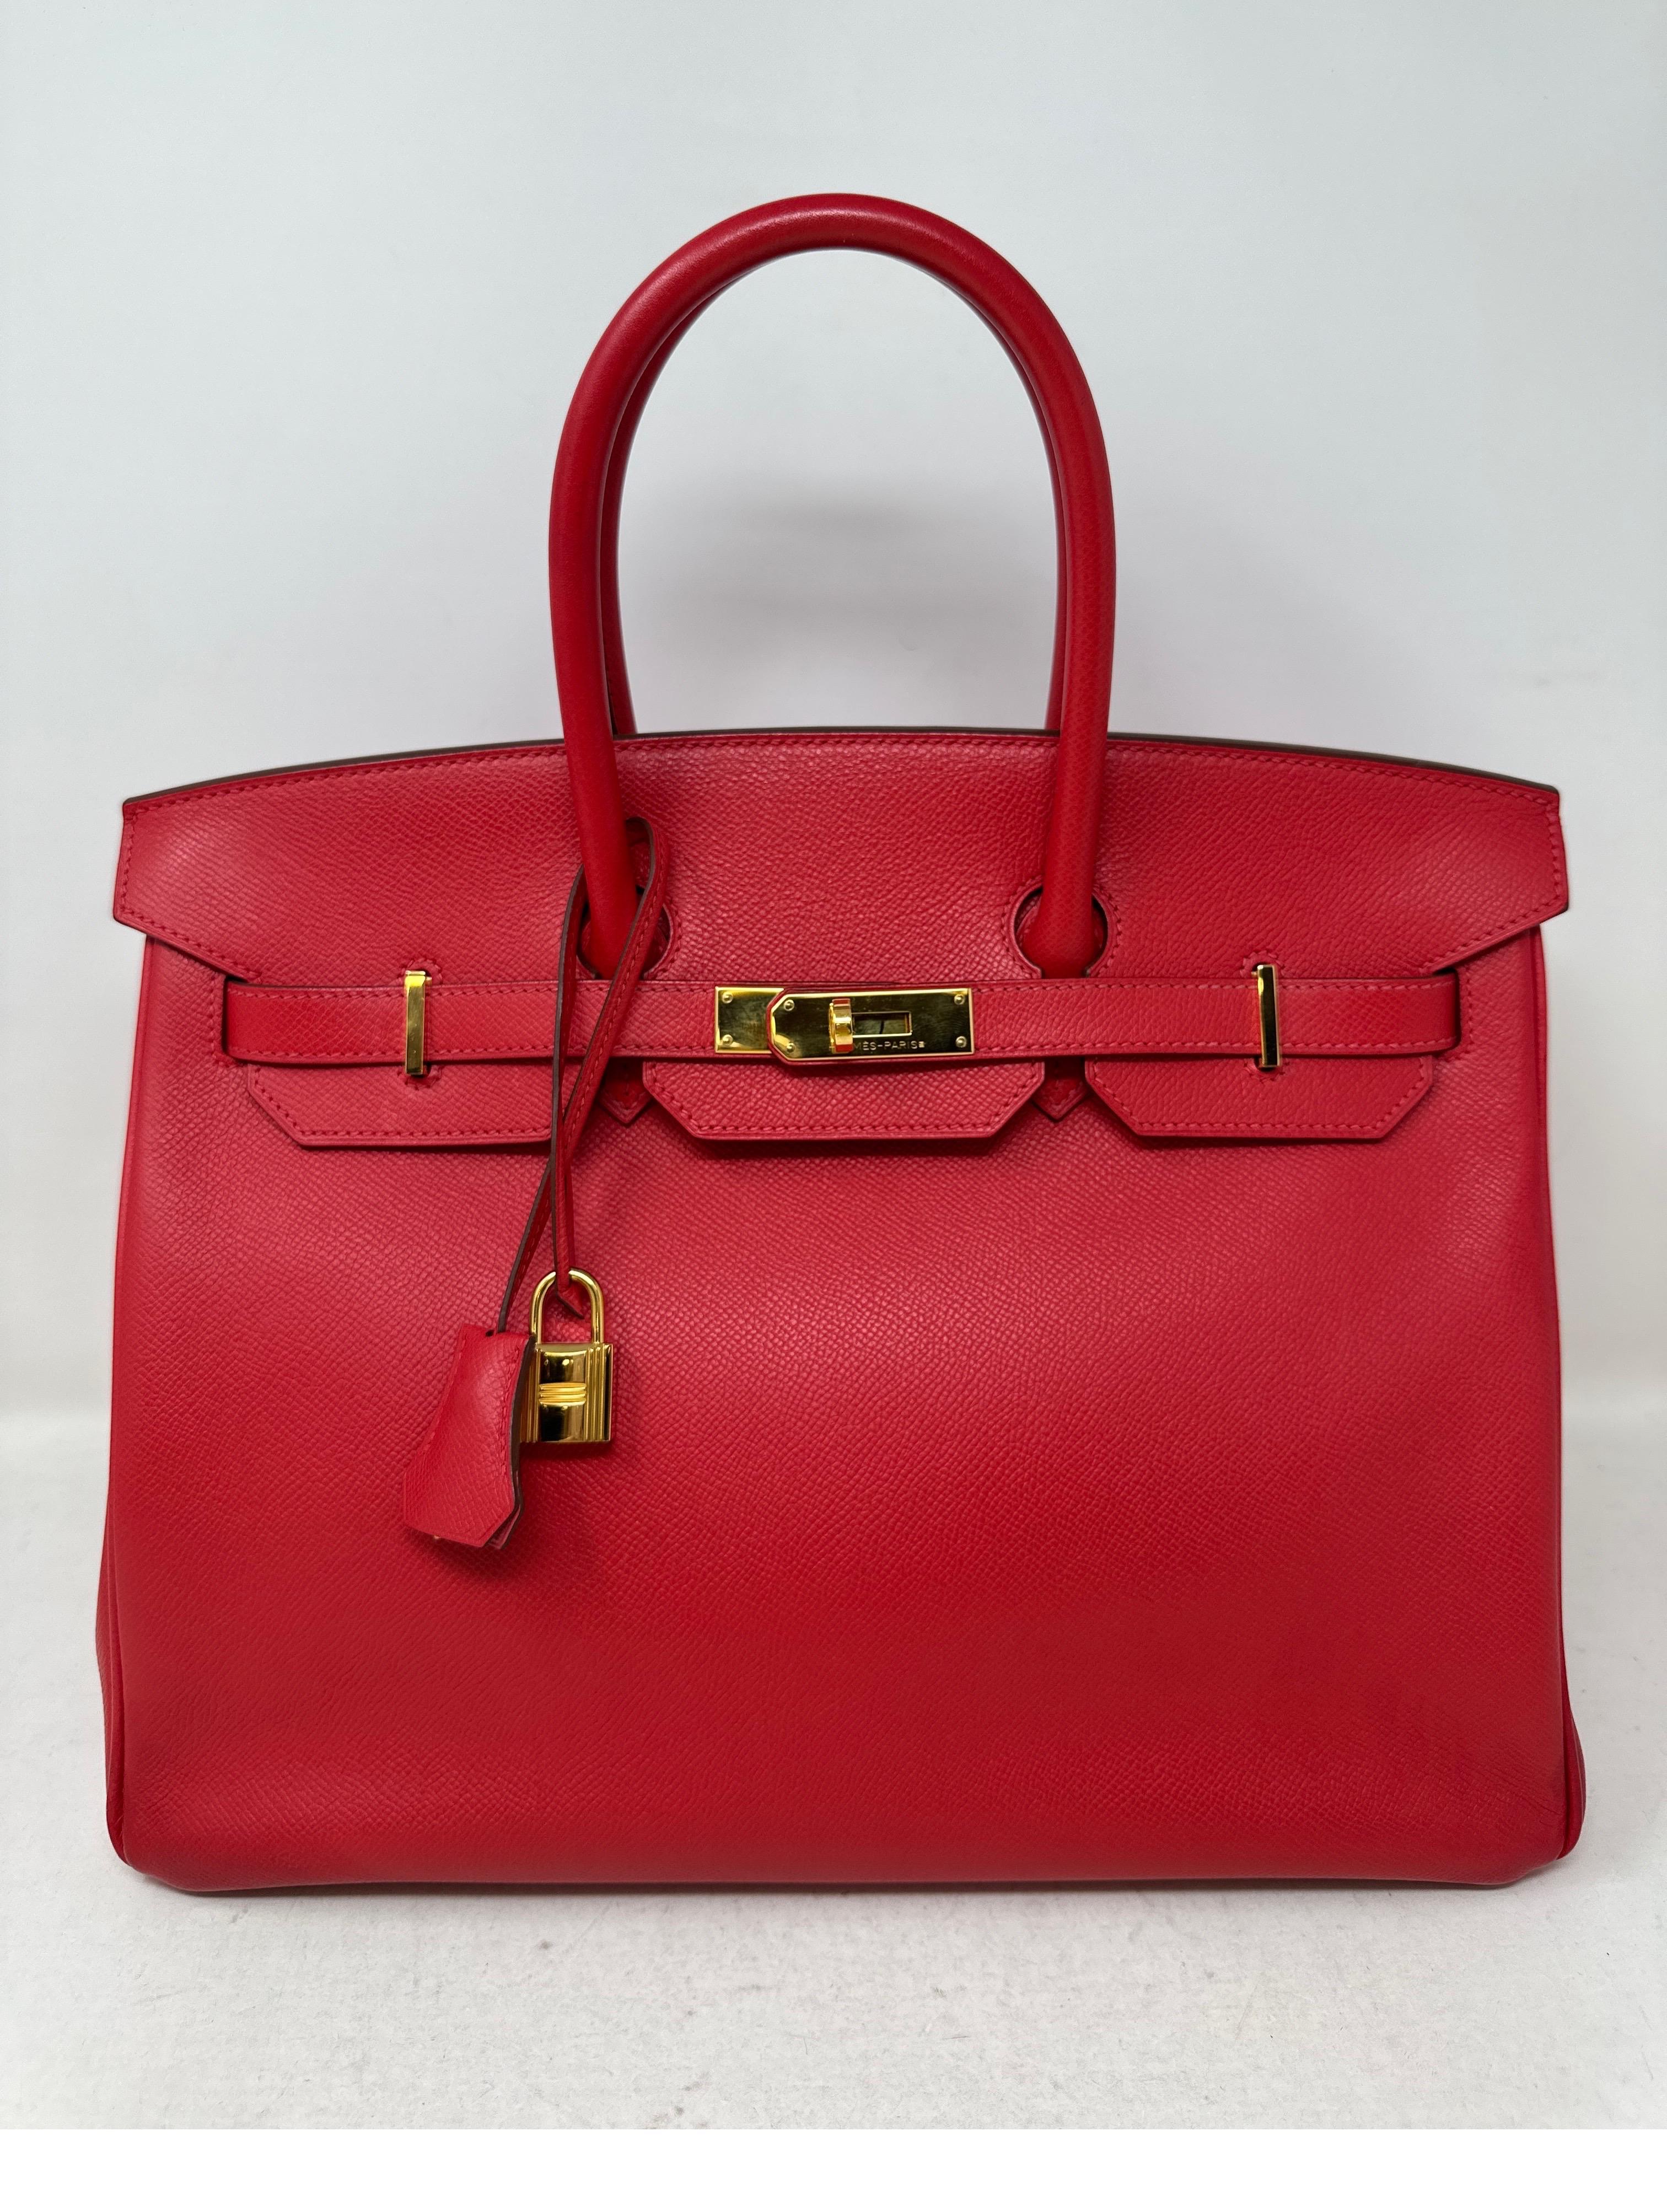 Hermès - Sac Birkin 35 rouge Casaque Excellent état à Athens, GA